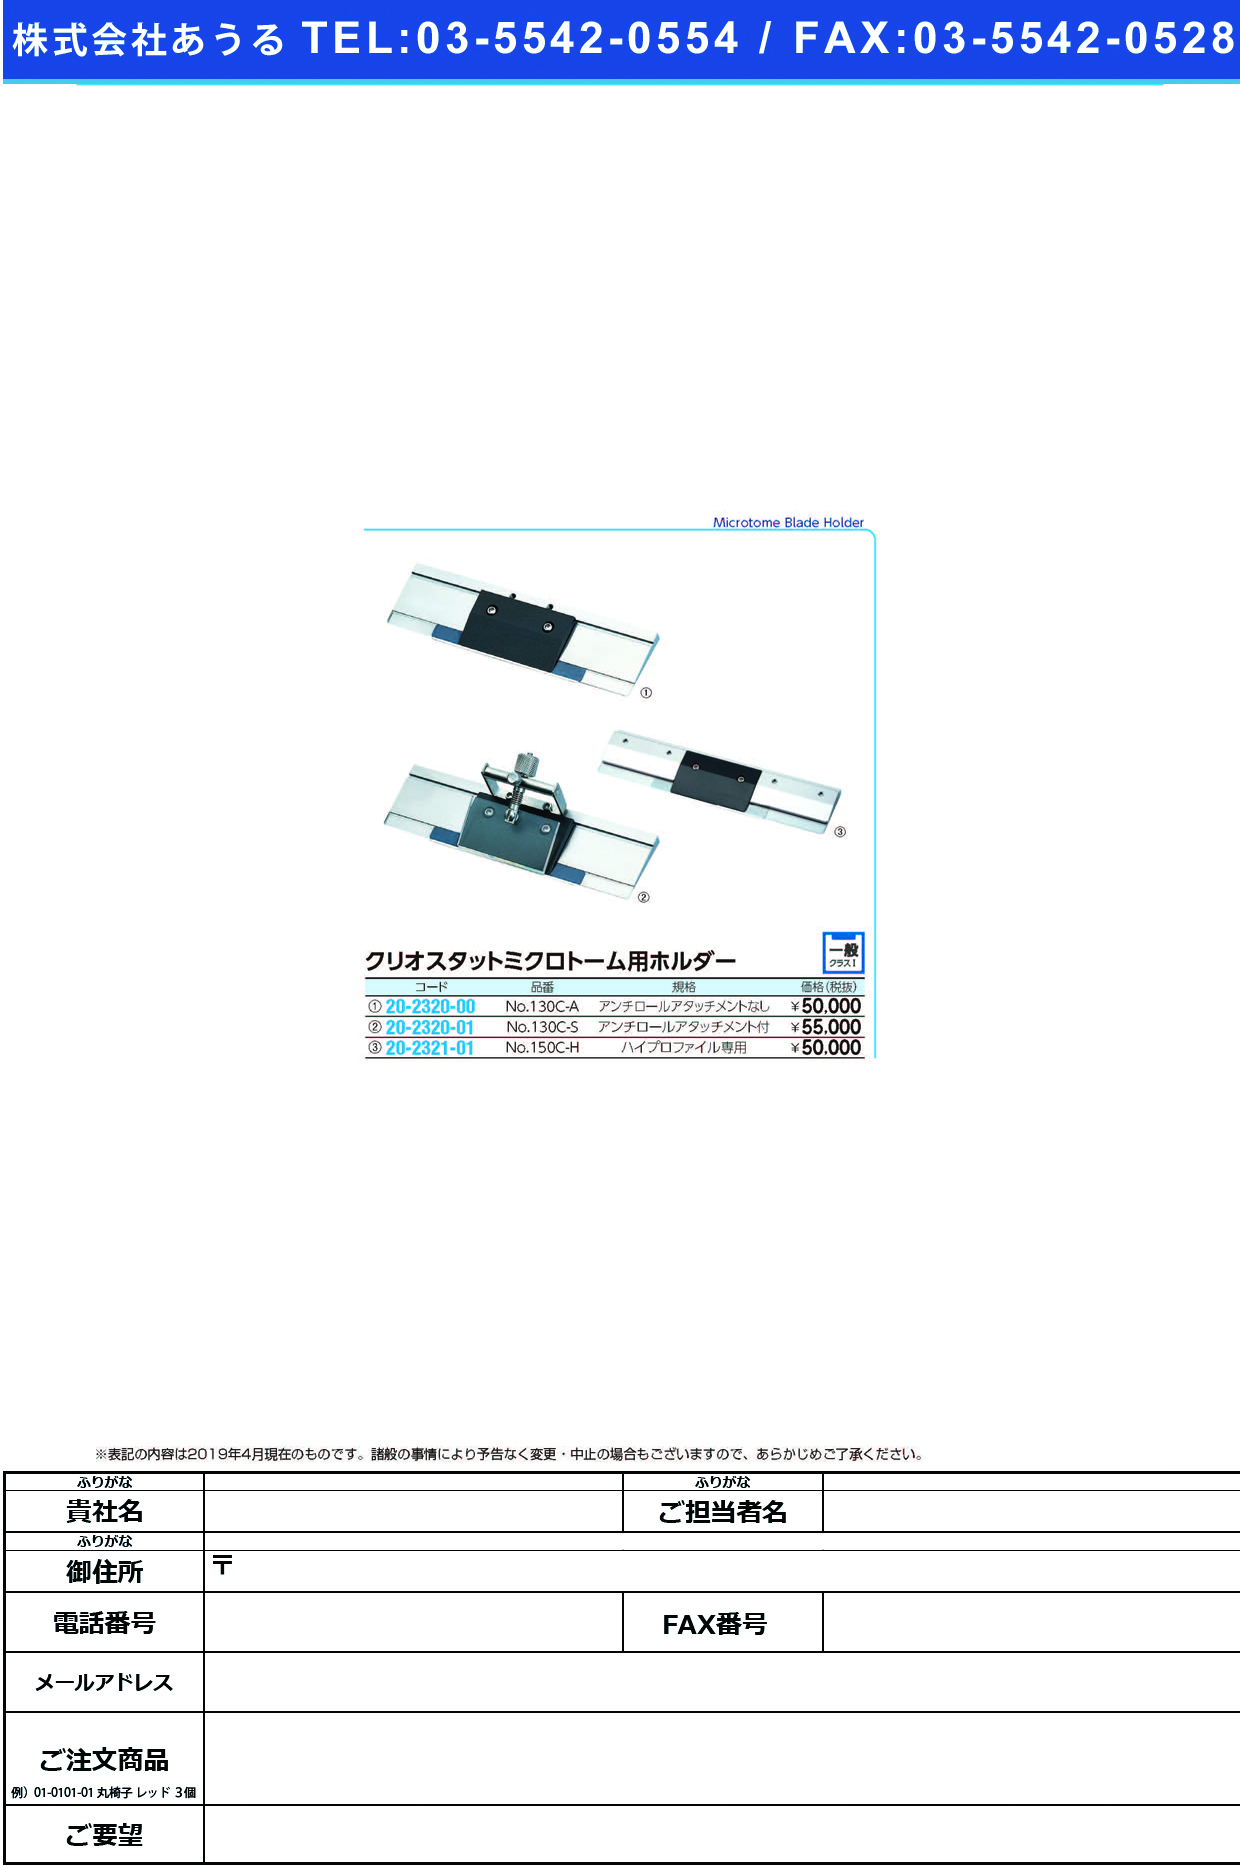 (20-2320-00)ミクロトームホルダーセット NO.130C-A ﾐｸﾛﾄｰﾑﾎﾙﾀﾞｰｾｯﾄ【1組単位】【2019年カタログ商品】